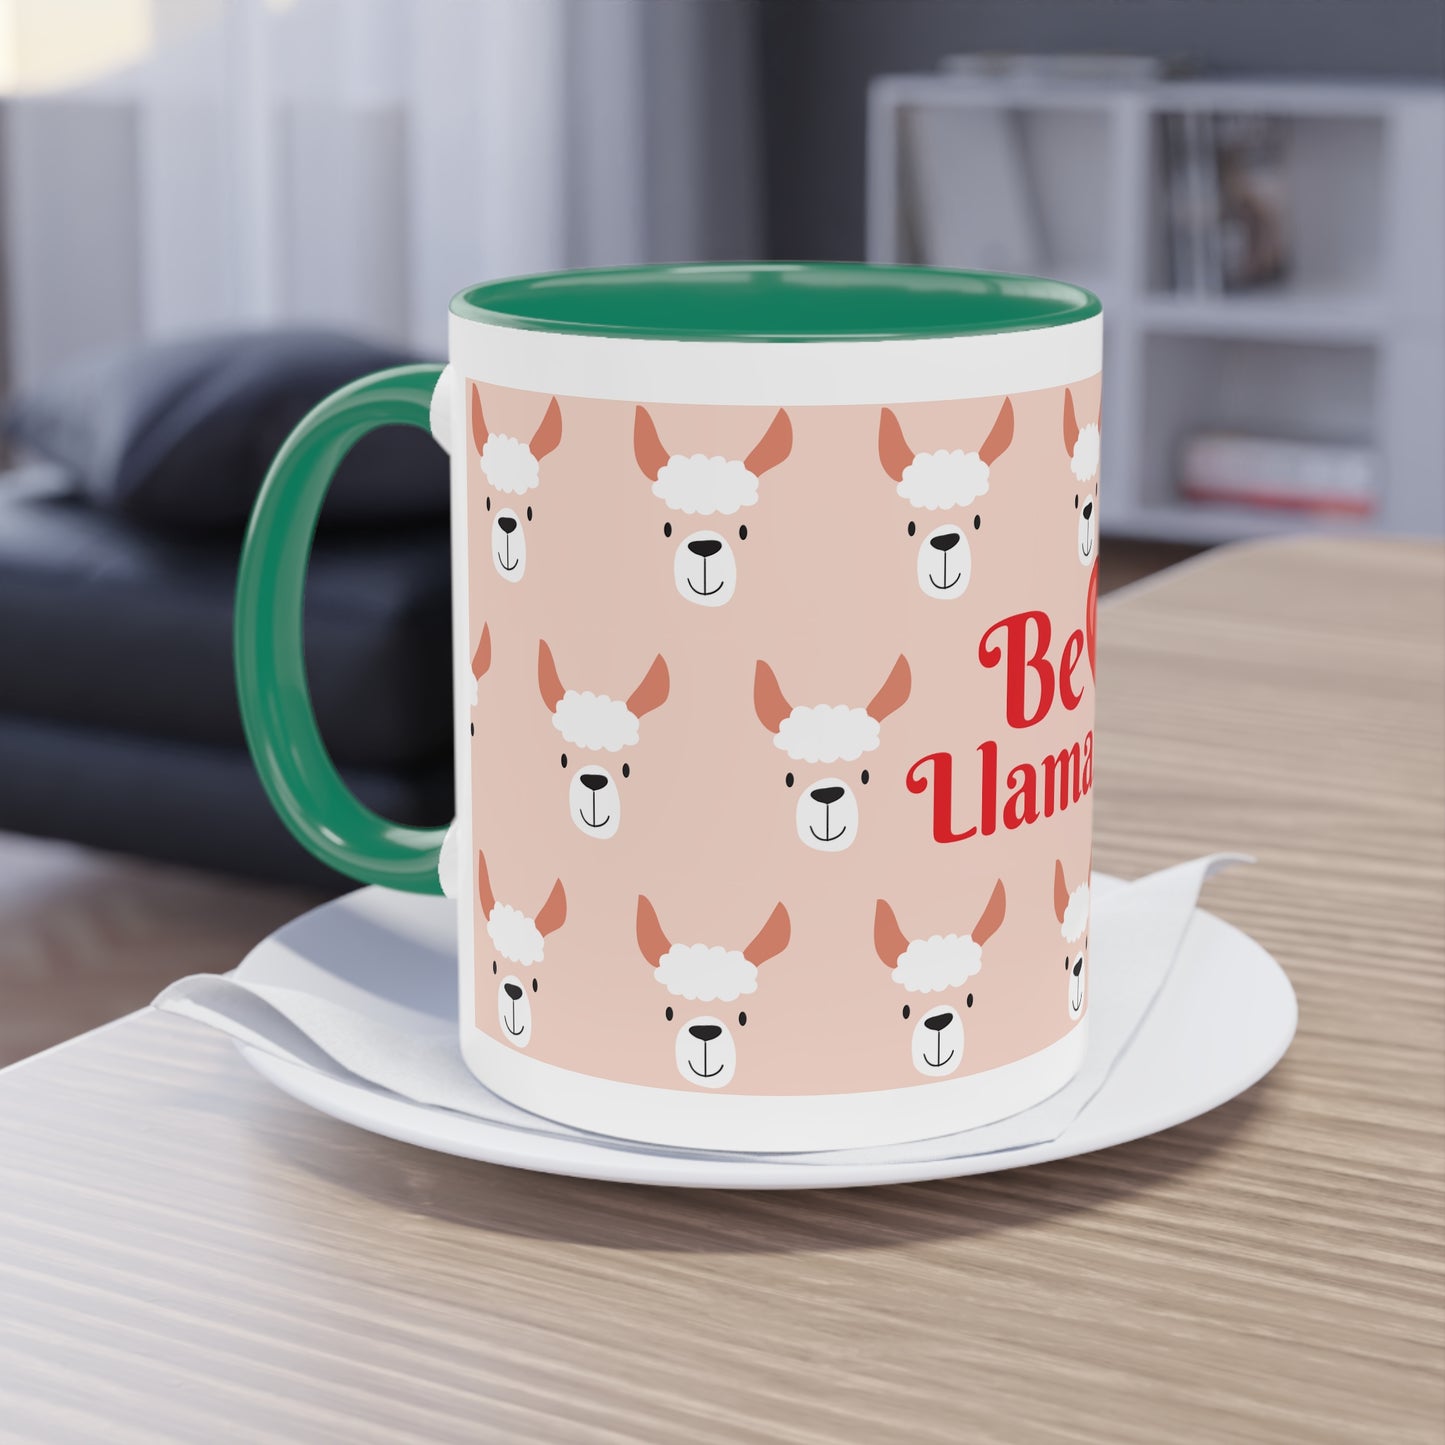 Two-Tone Coffee Mug, 11oz